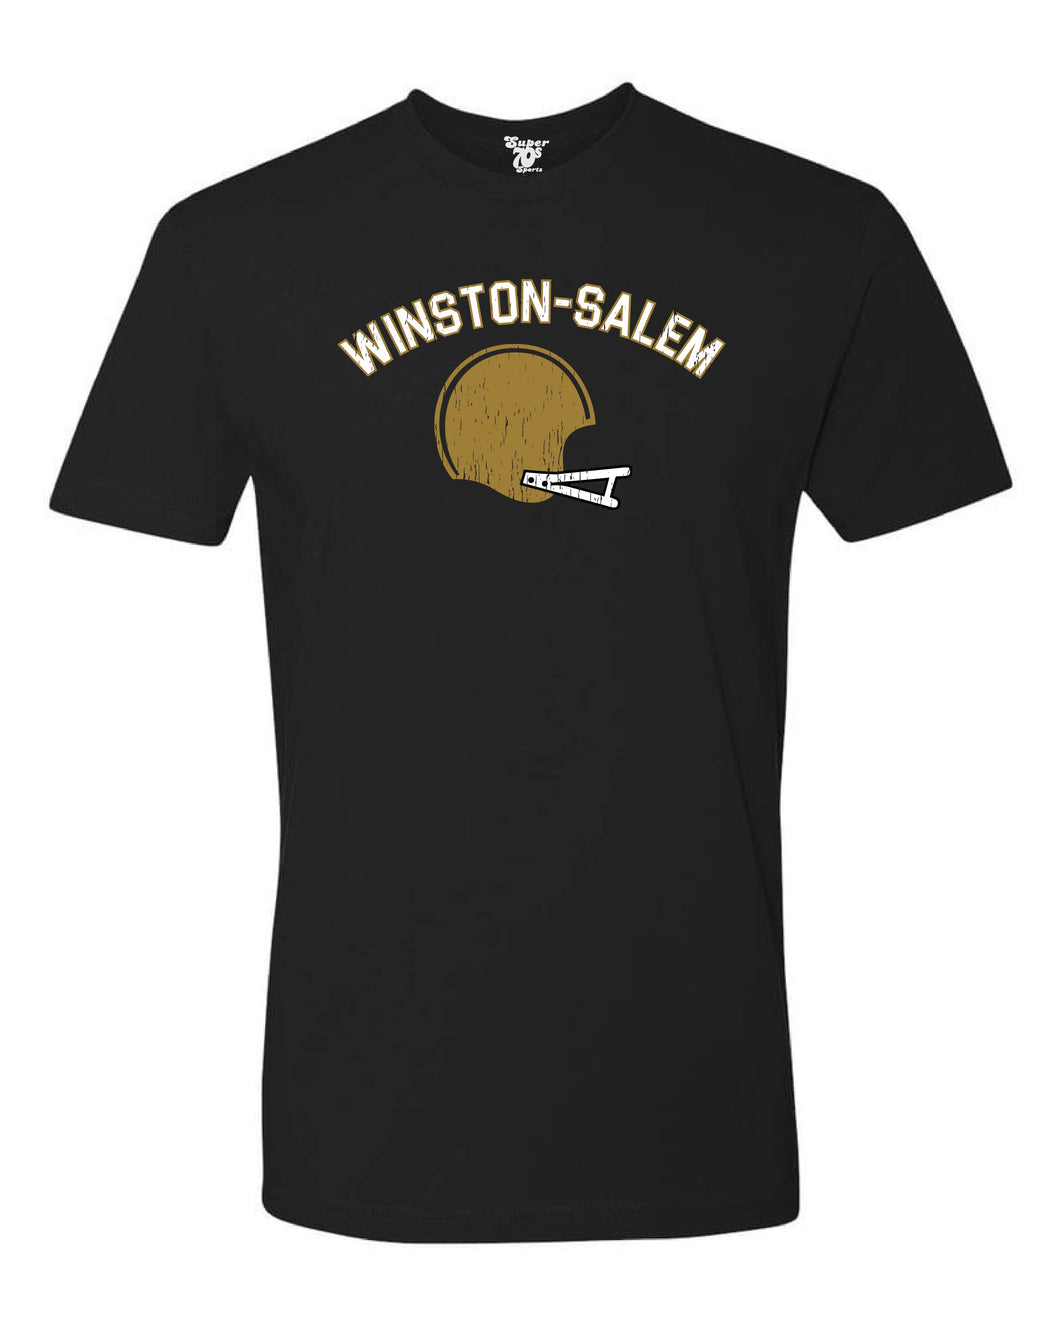 Winston-Salem Football Tee